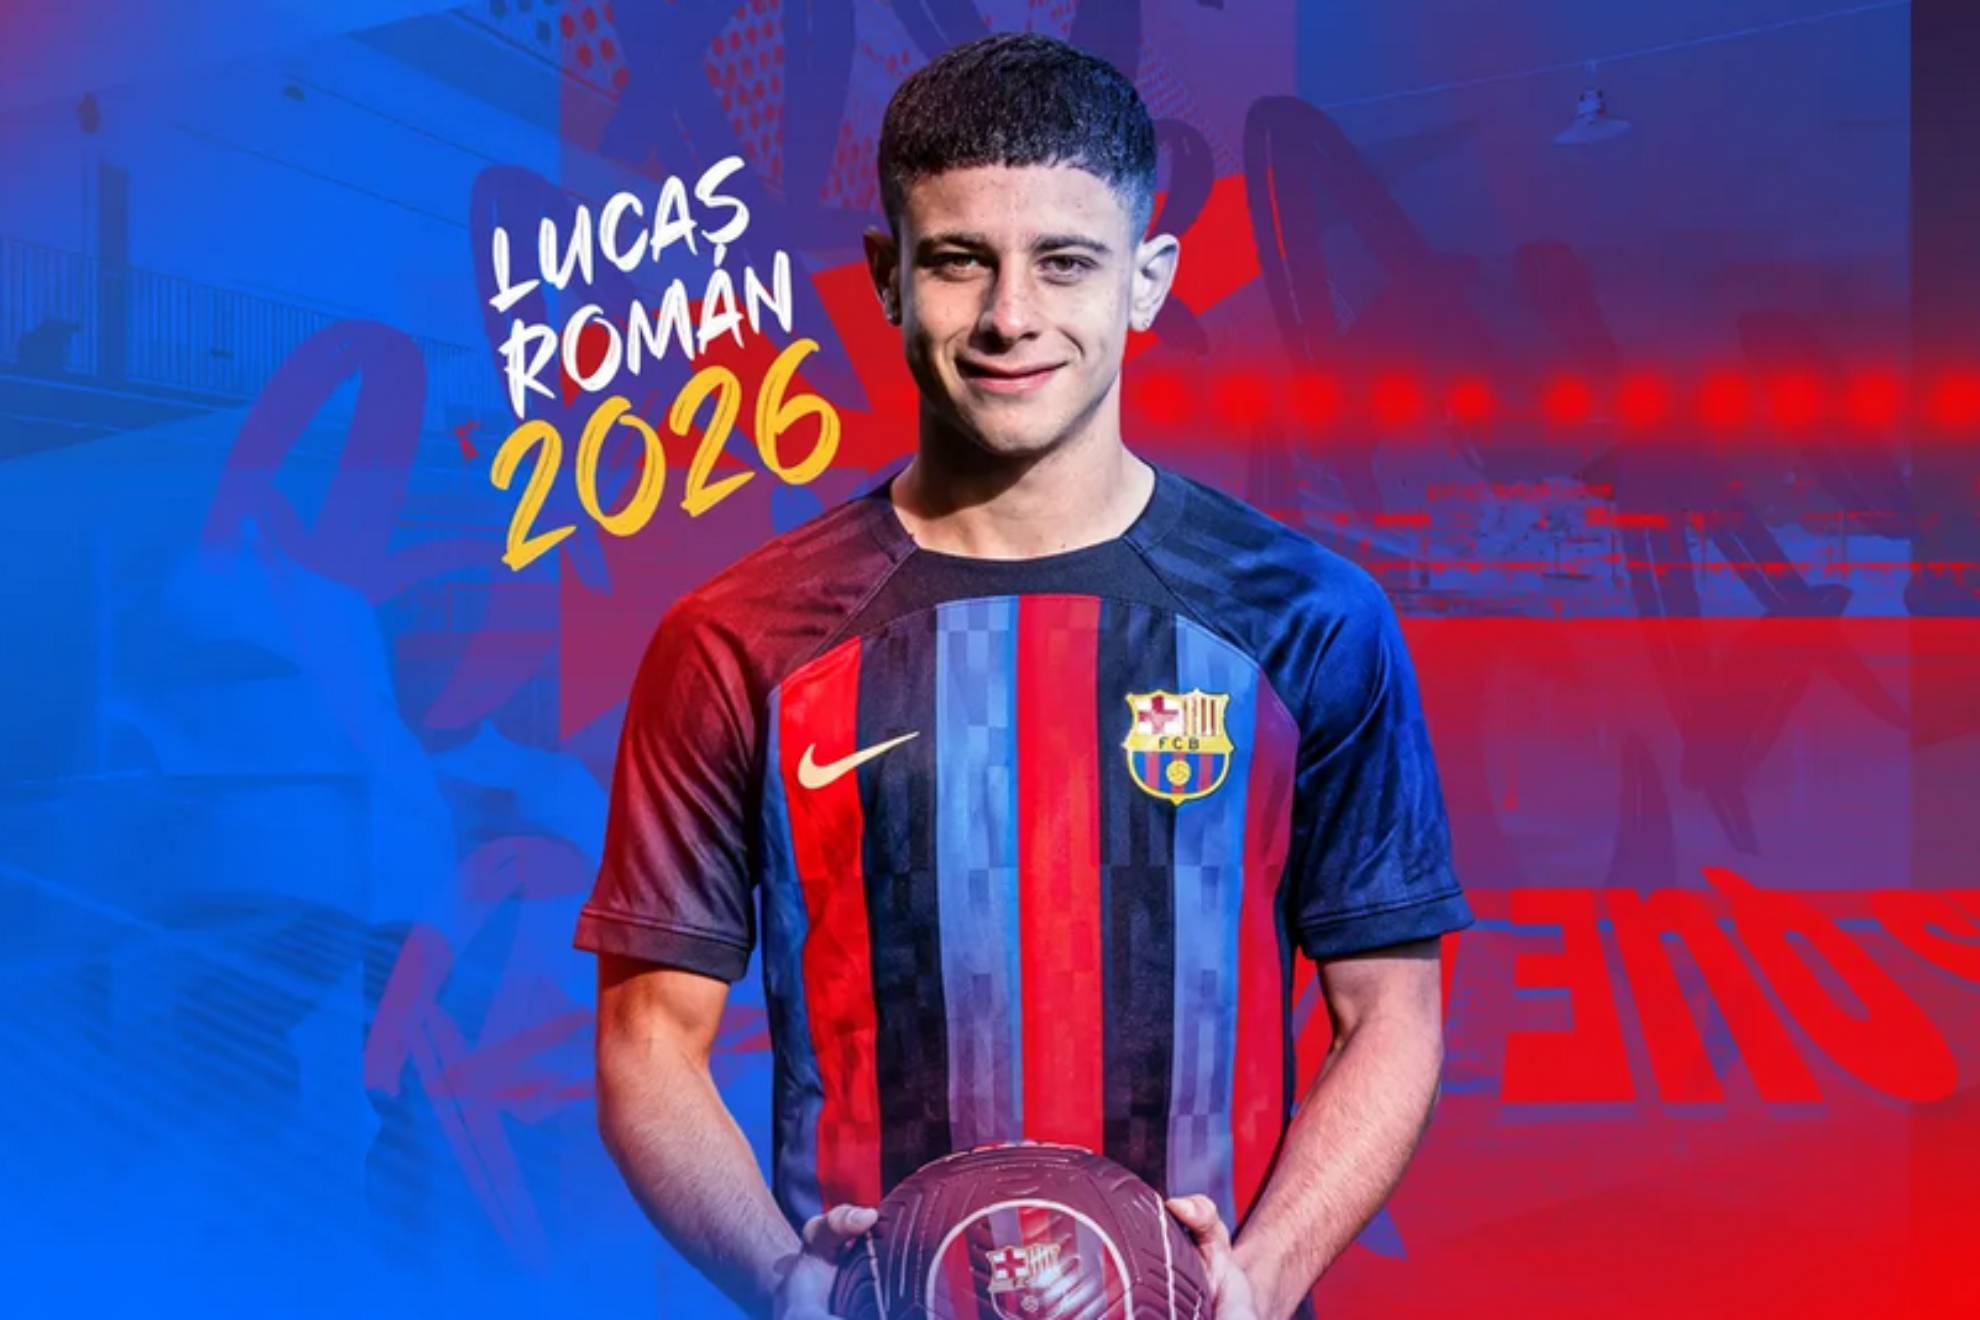 Lucas Roman